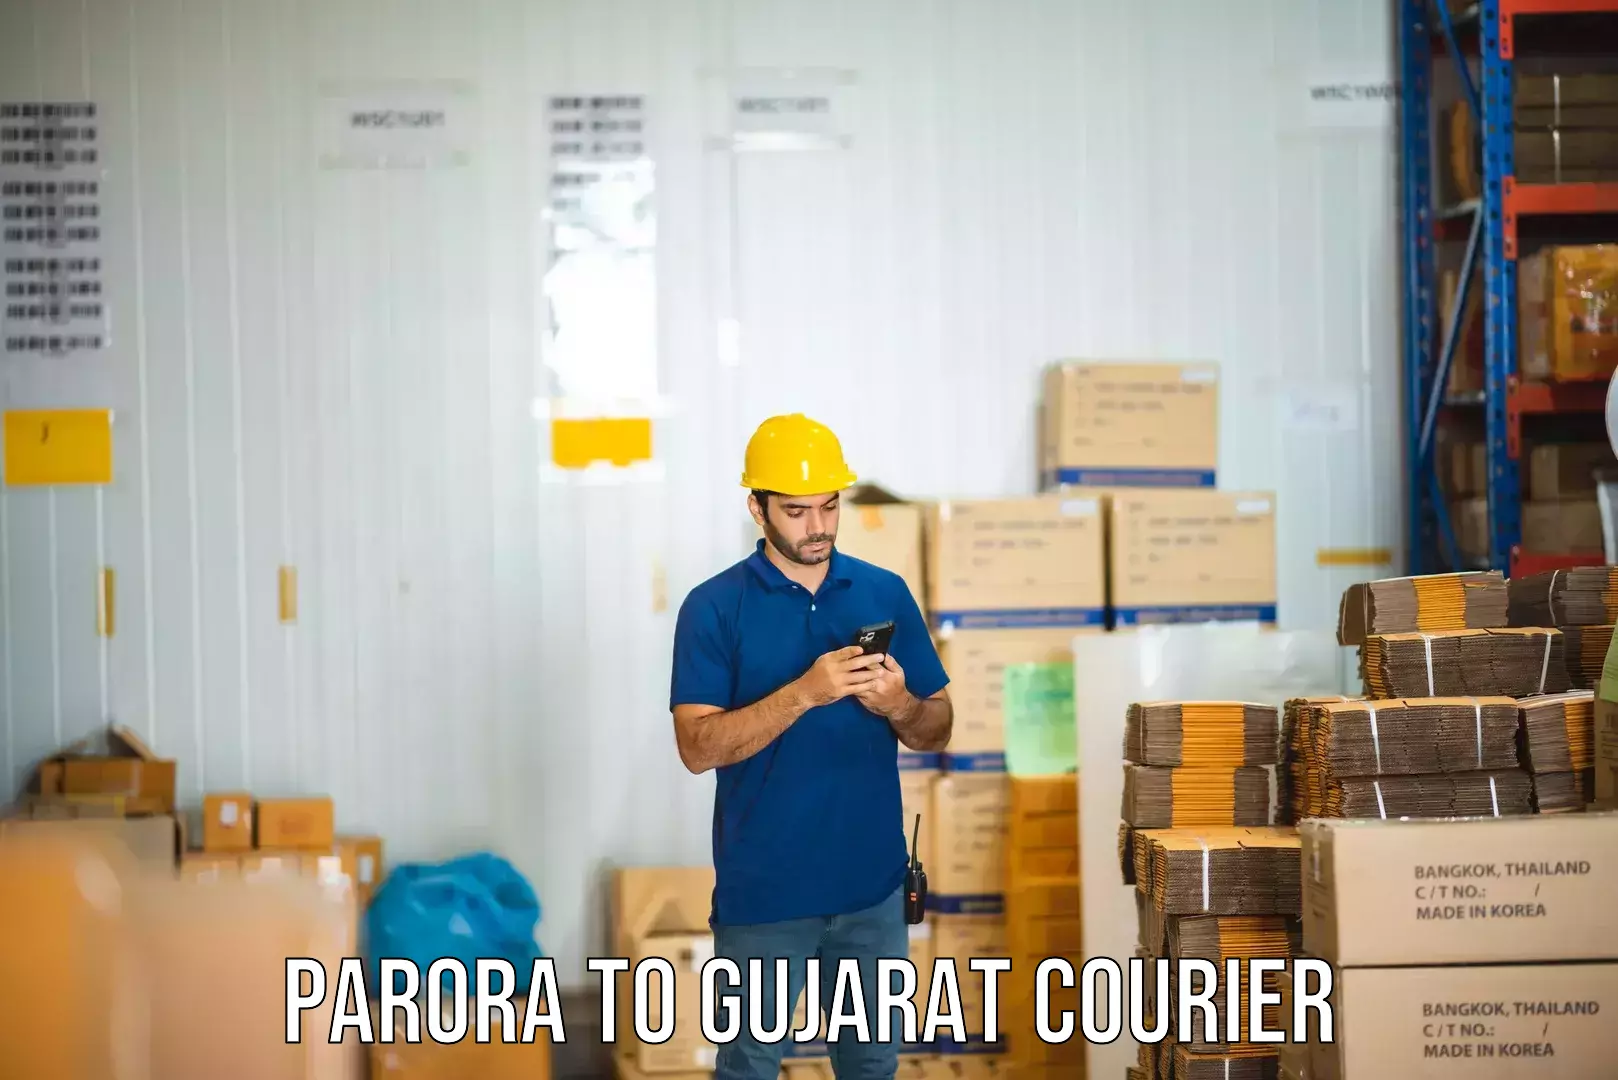 Business courier solutions Parora to IIIT Surat